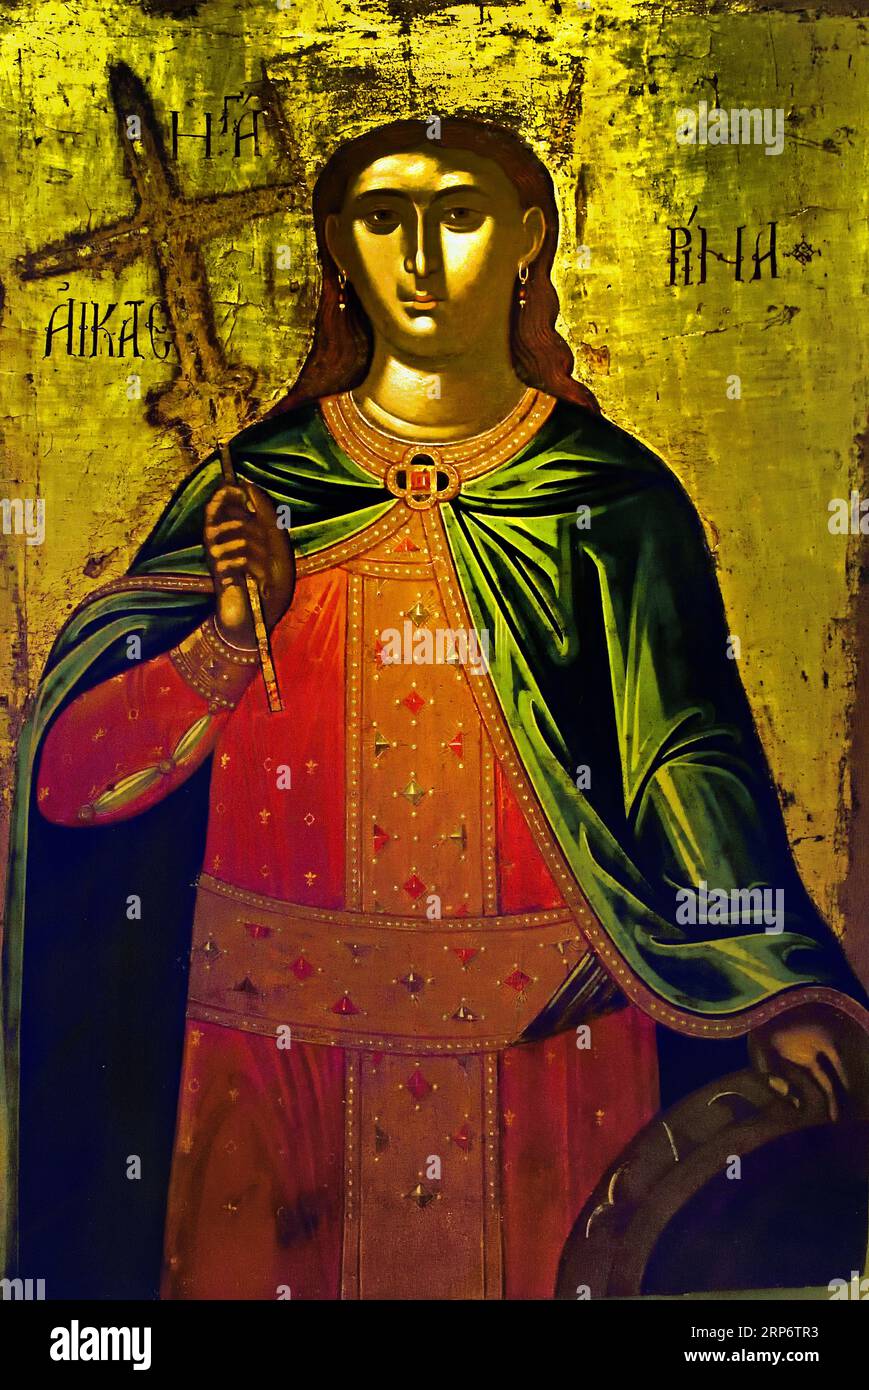 Icône de la Sainte Catherine 16e siècle Athènes Grèce Musée byzantin Église orthodoxe grecque ( icône ) Banque D'Images